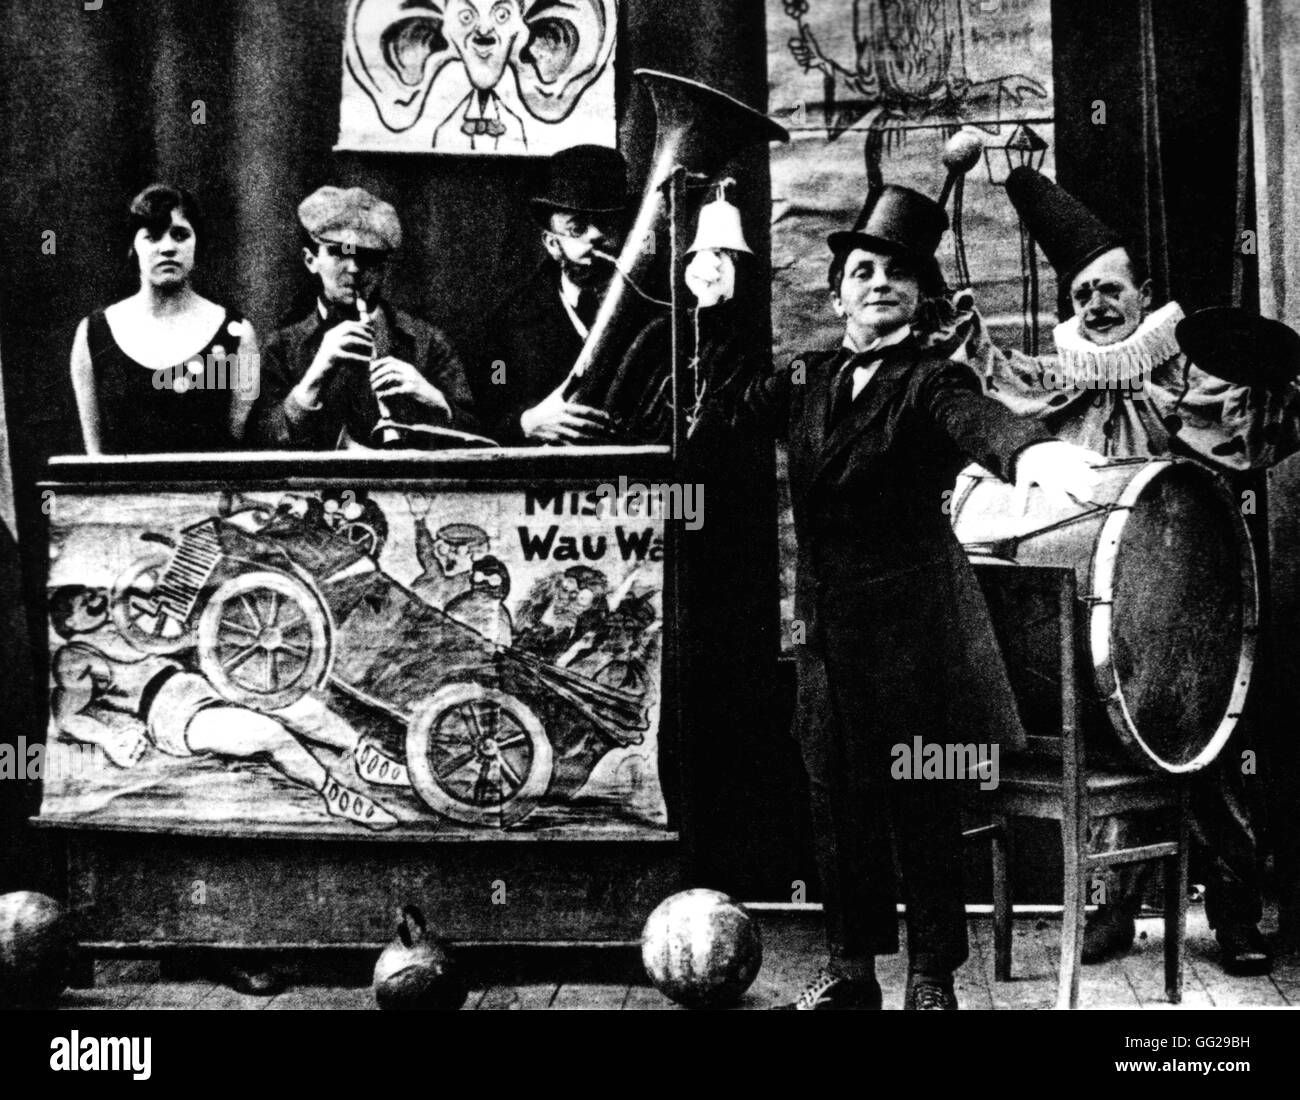 Bertold Brecht (1898-1956) dans la région de Karl Valentin's band humoristique (2e à gauche) 20e siècle Allemagne Paris. Bibliothèque nationale Banque D'Images